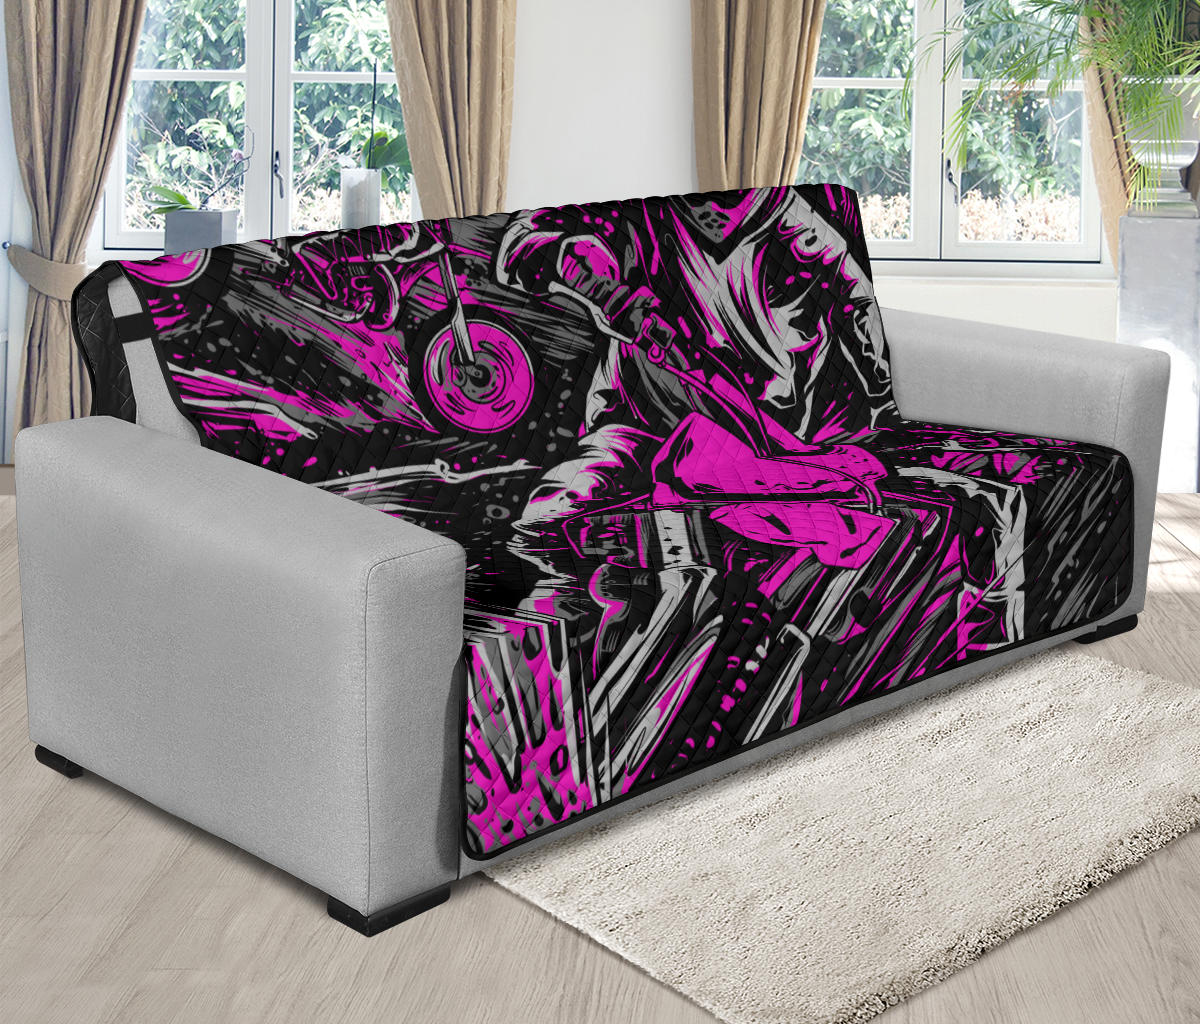 Motocross Futon Sofa Protector